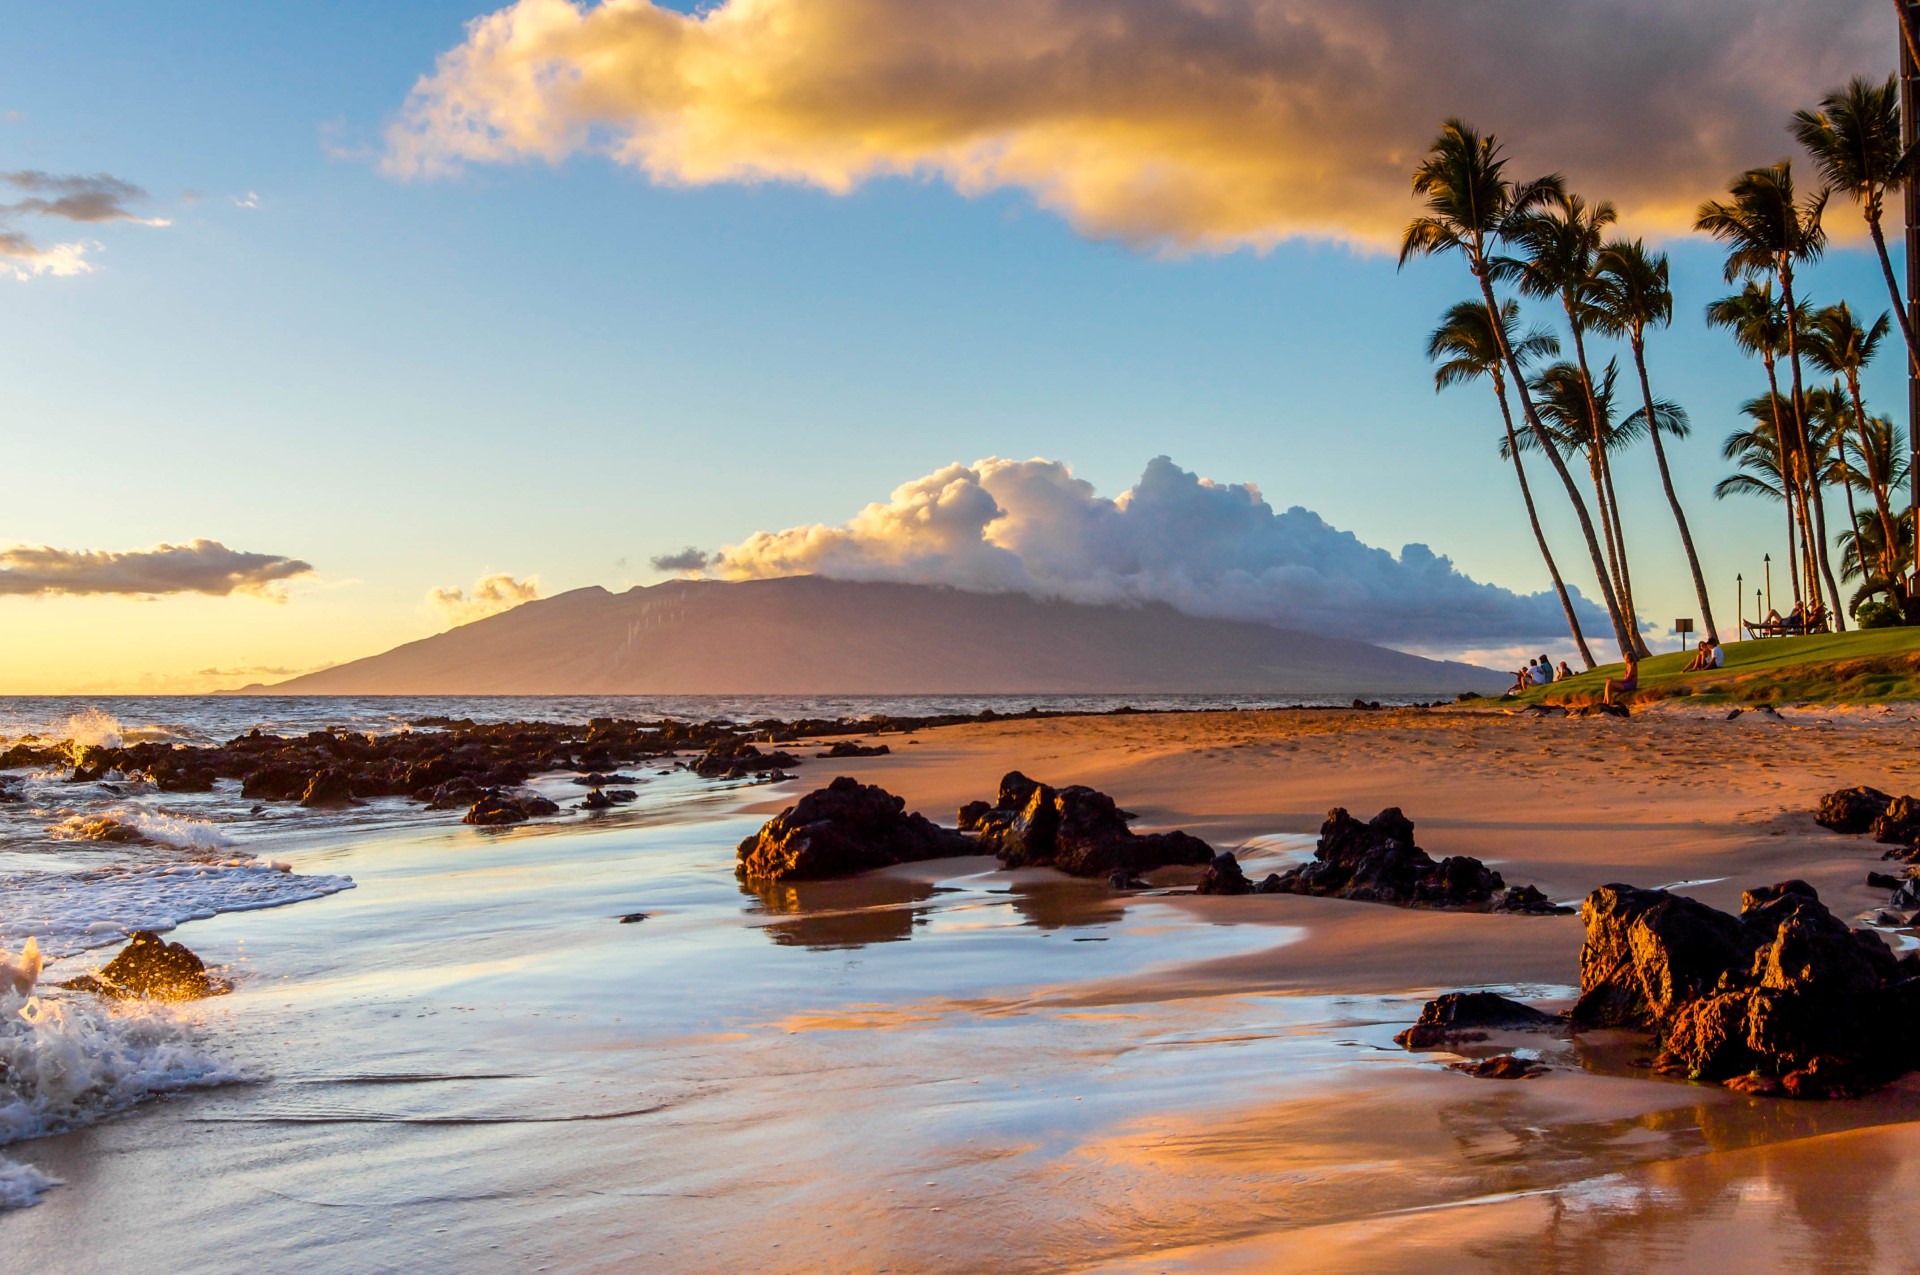 Hawaii abseits der bekannten Touristenpfade